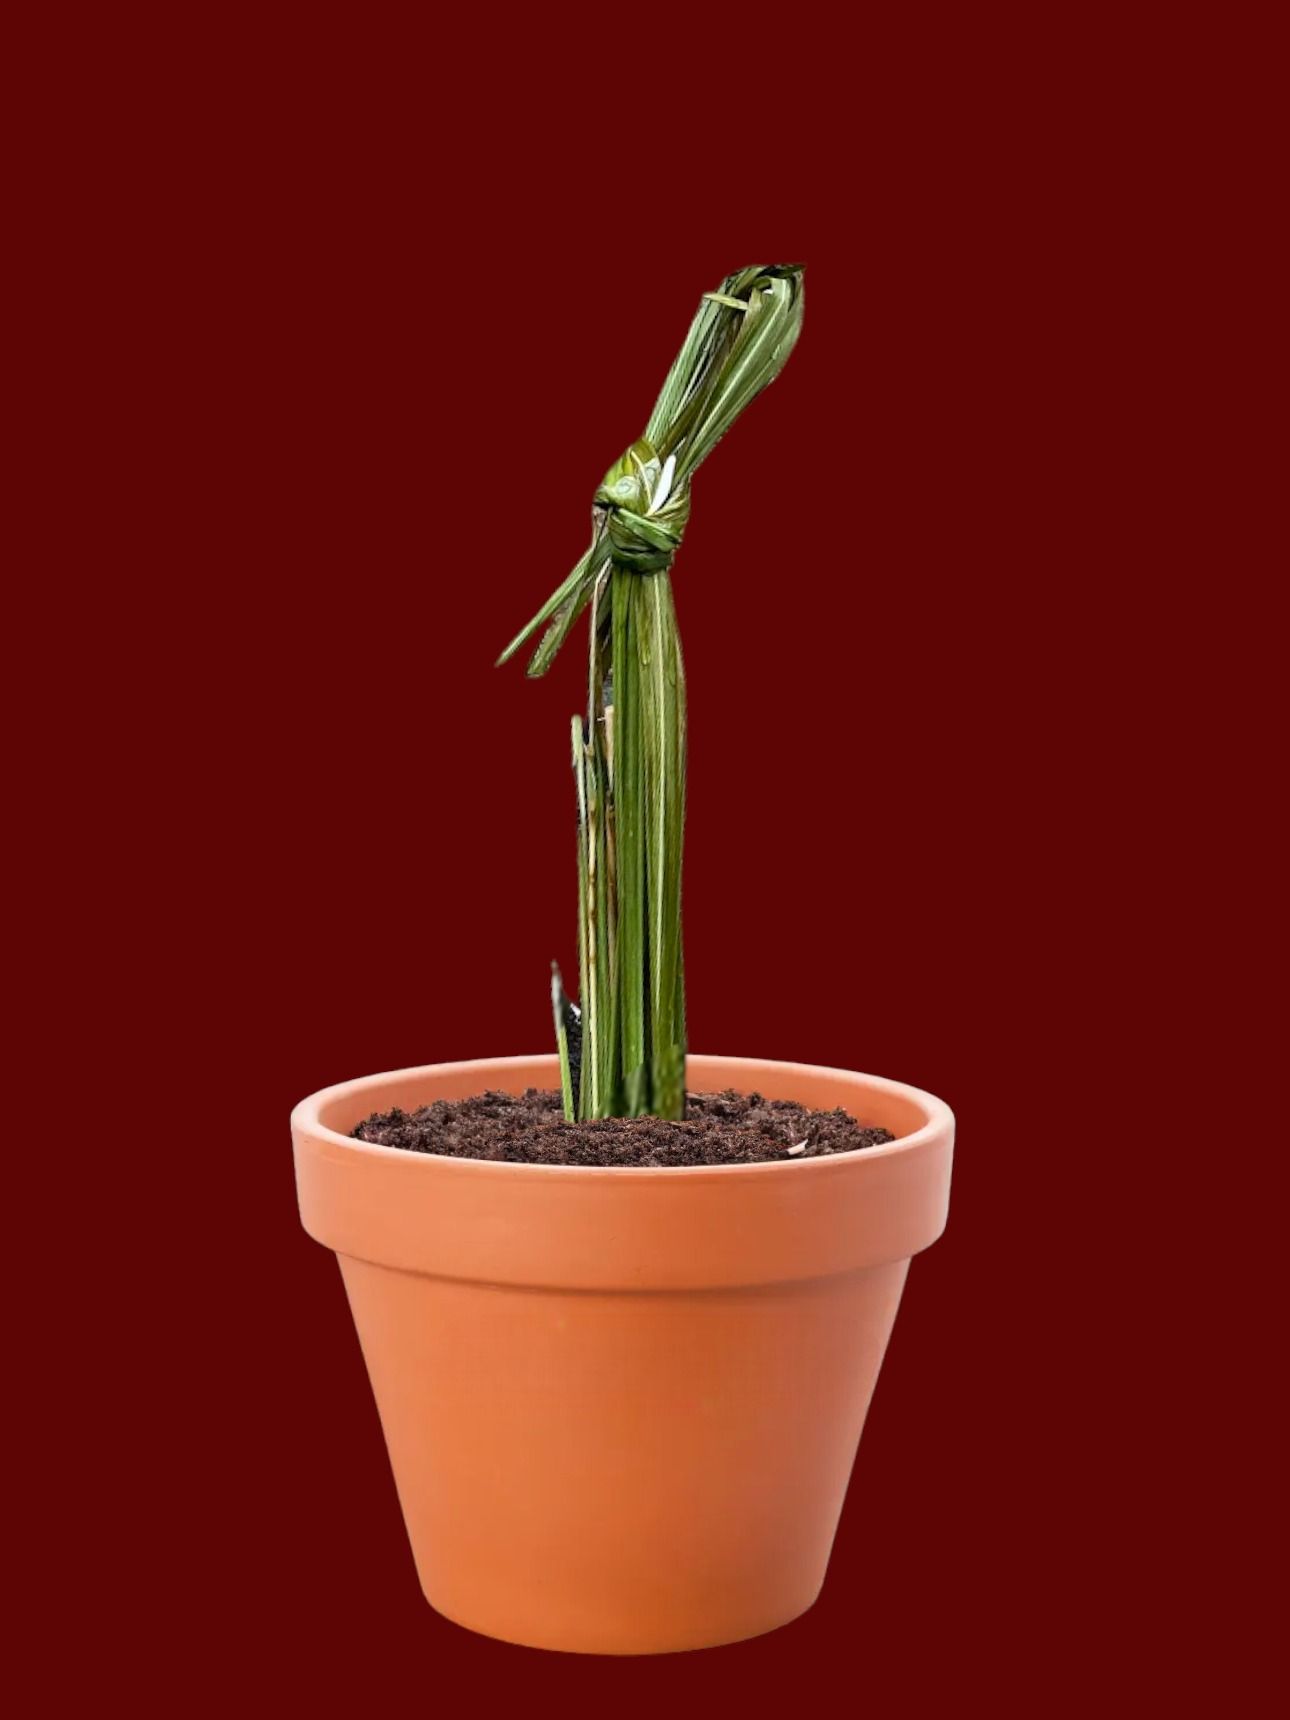 Een kleine plant in een pot met een rode achtergrond.